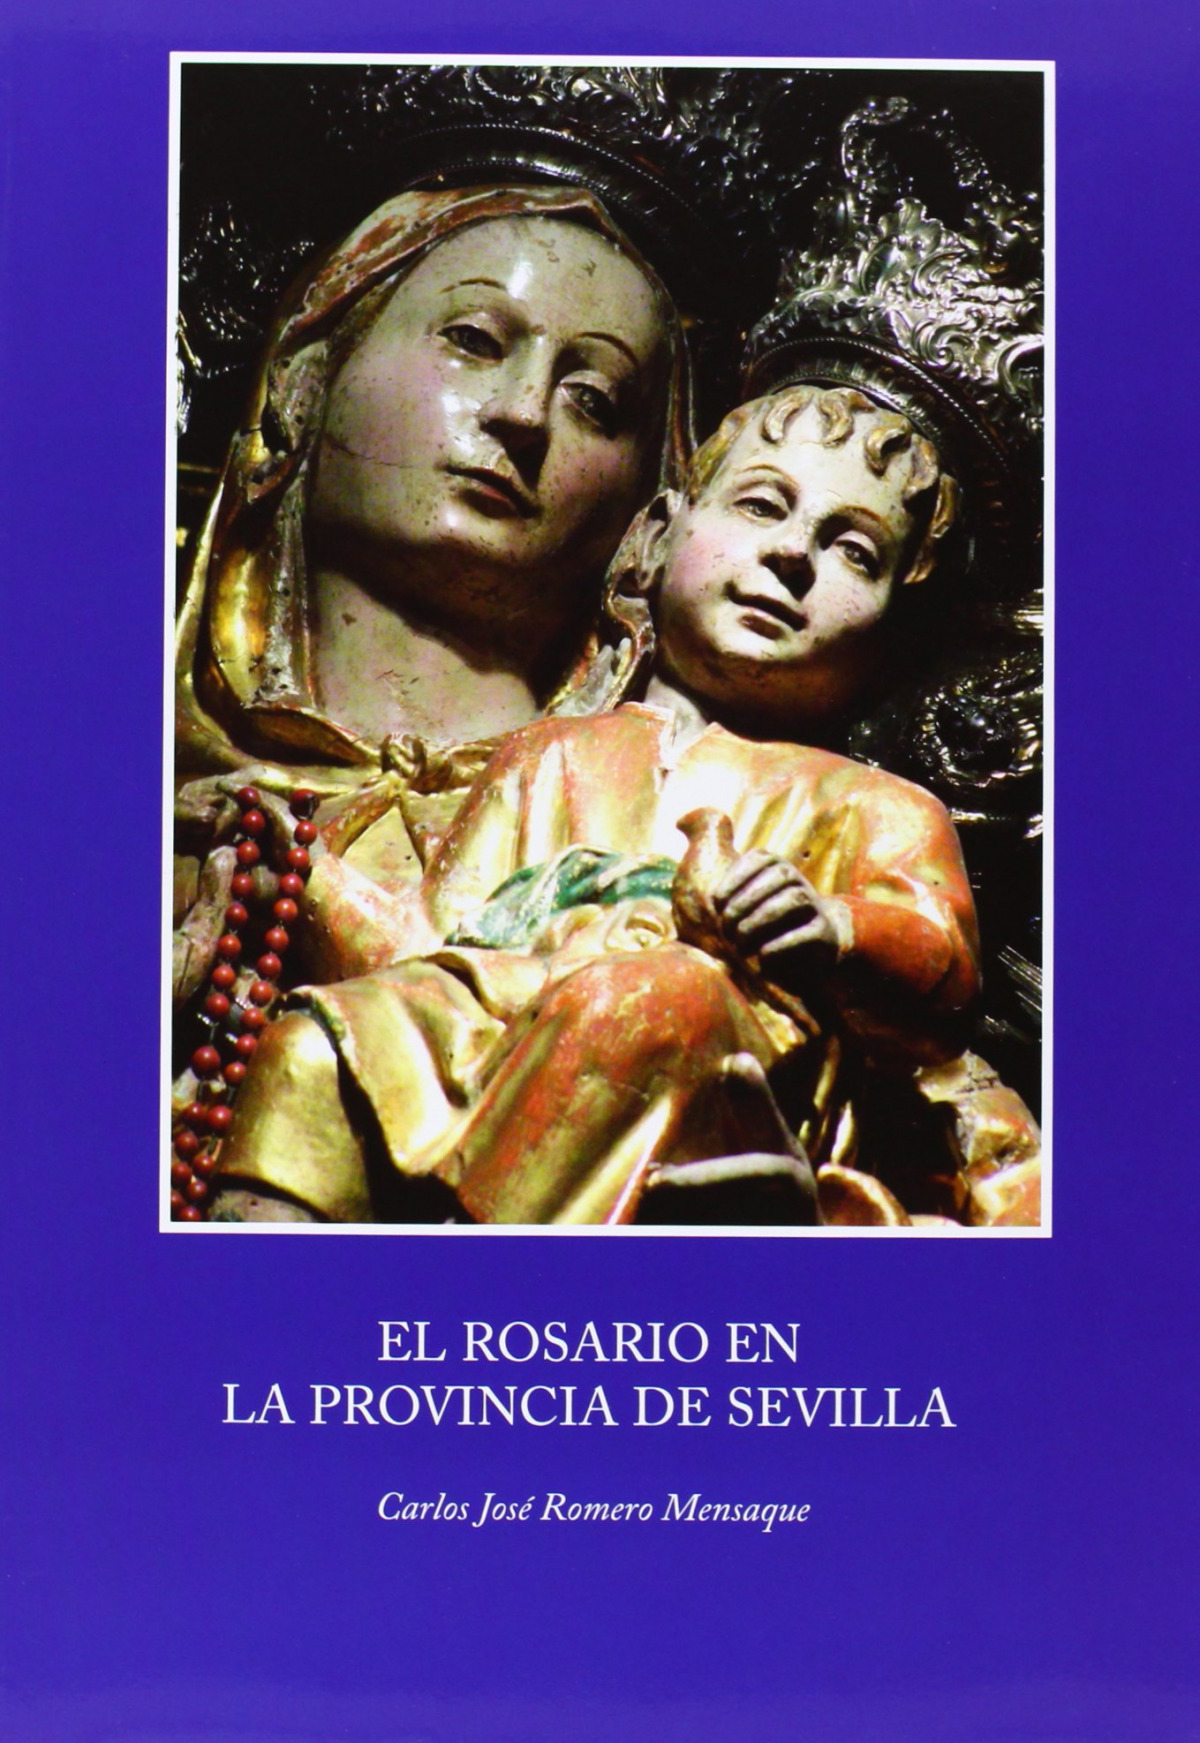 El rosario en la provincia de sevilla - Mensaque, Romero